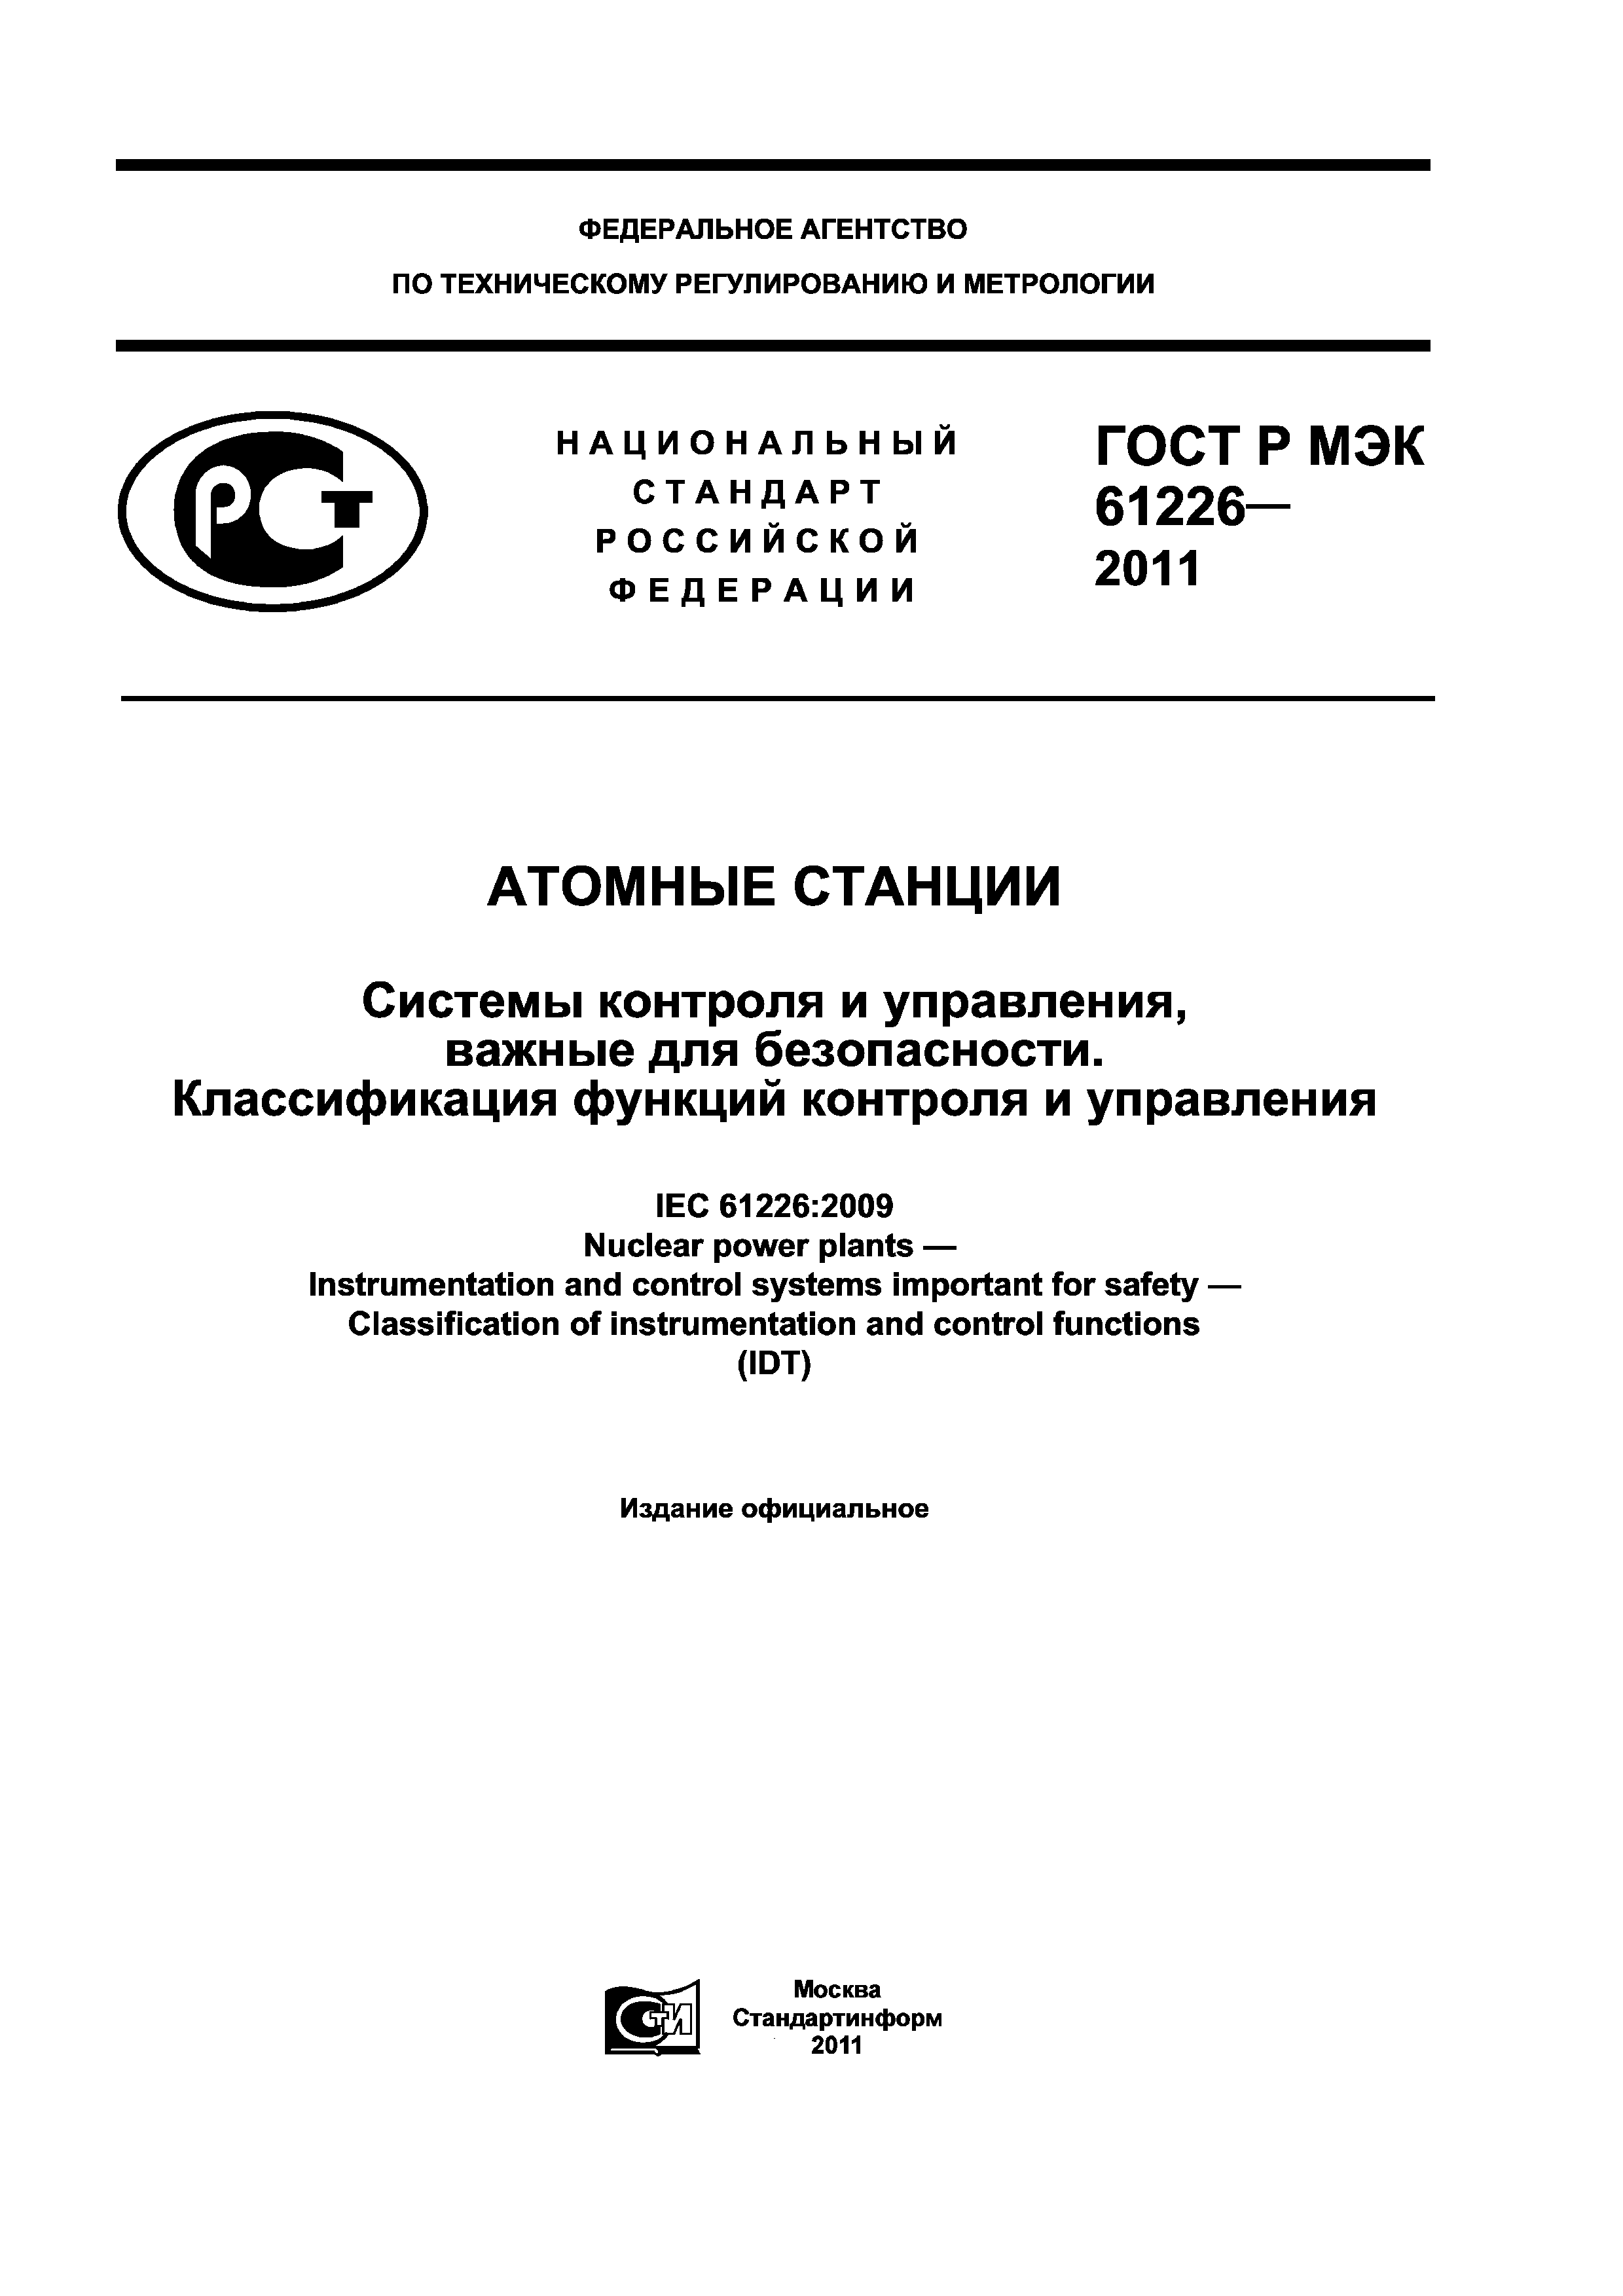 ГОСТ Р МЭК 61226-2011